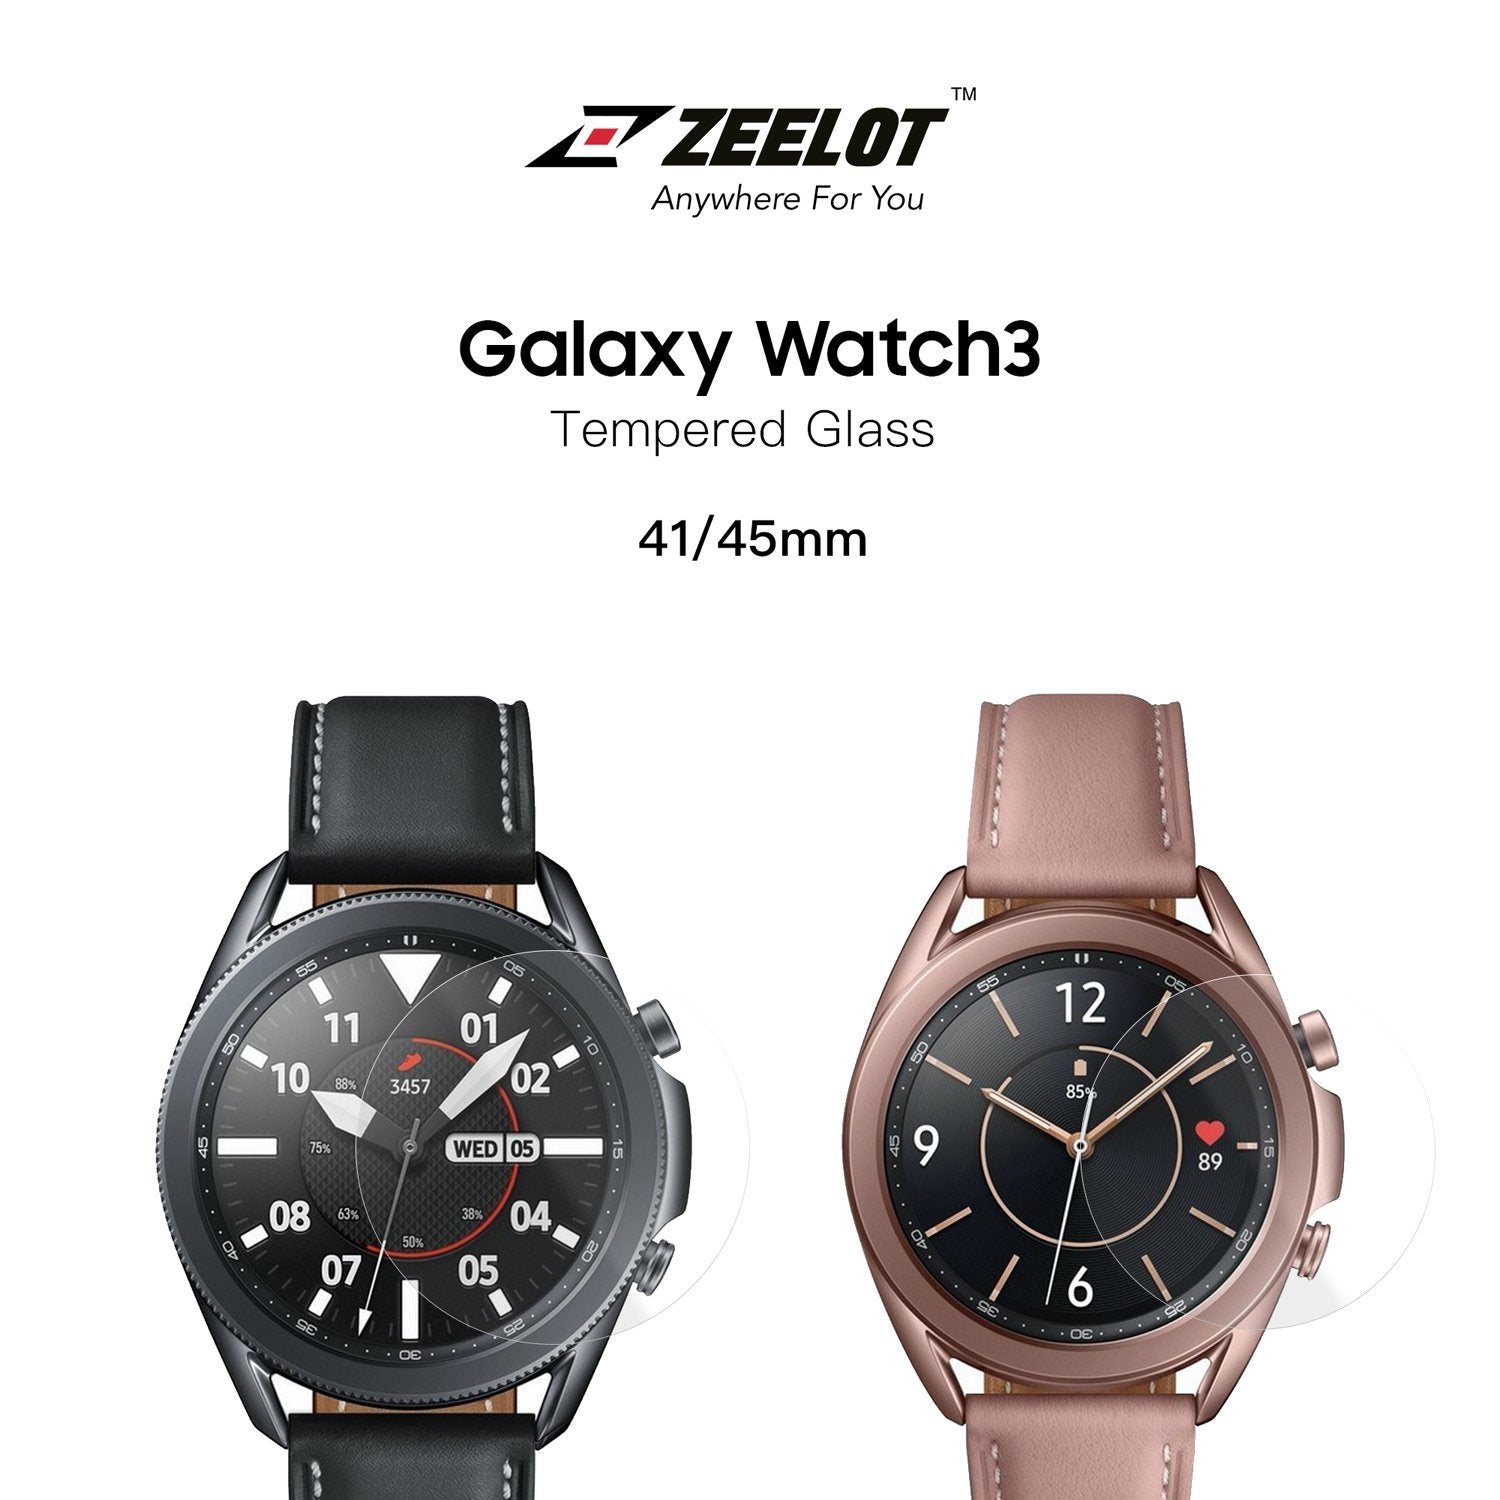 ZEELOT PureShield 2.5D Tempered Glass Screen Protector for Samsung Galaxy Watch 3 45mm (2Pcs), Clear Default ZEELOT 